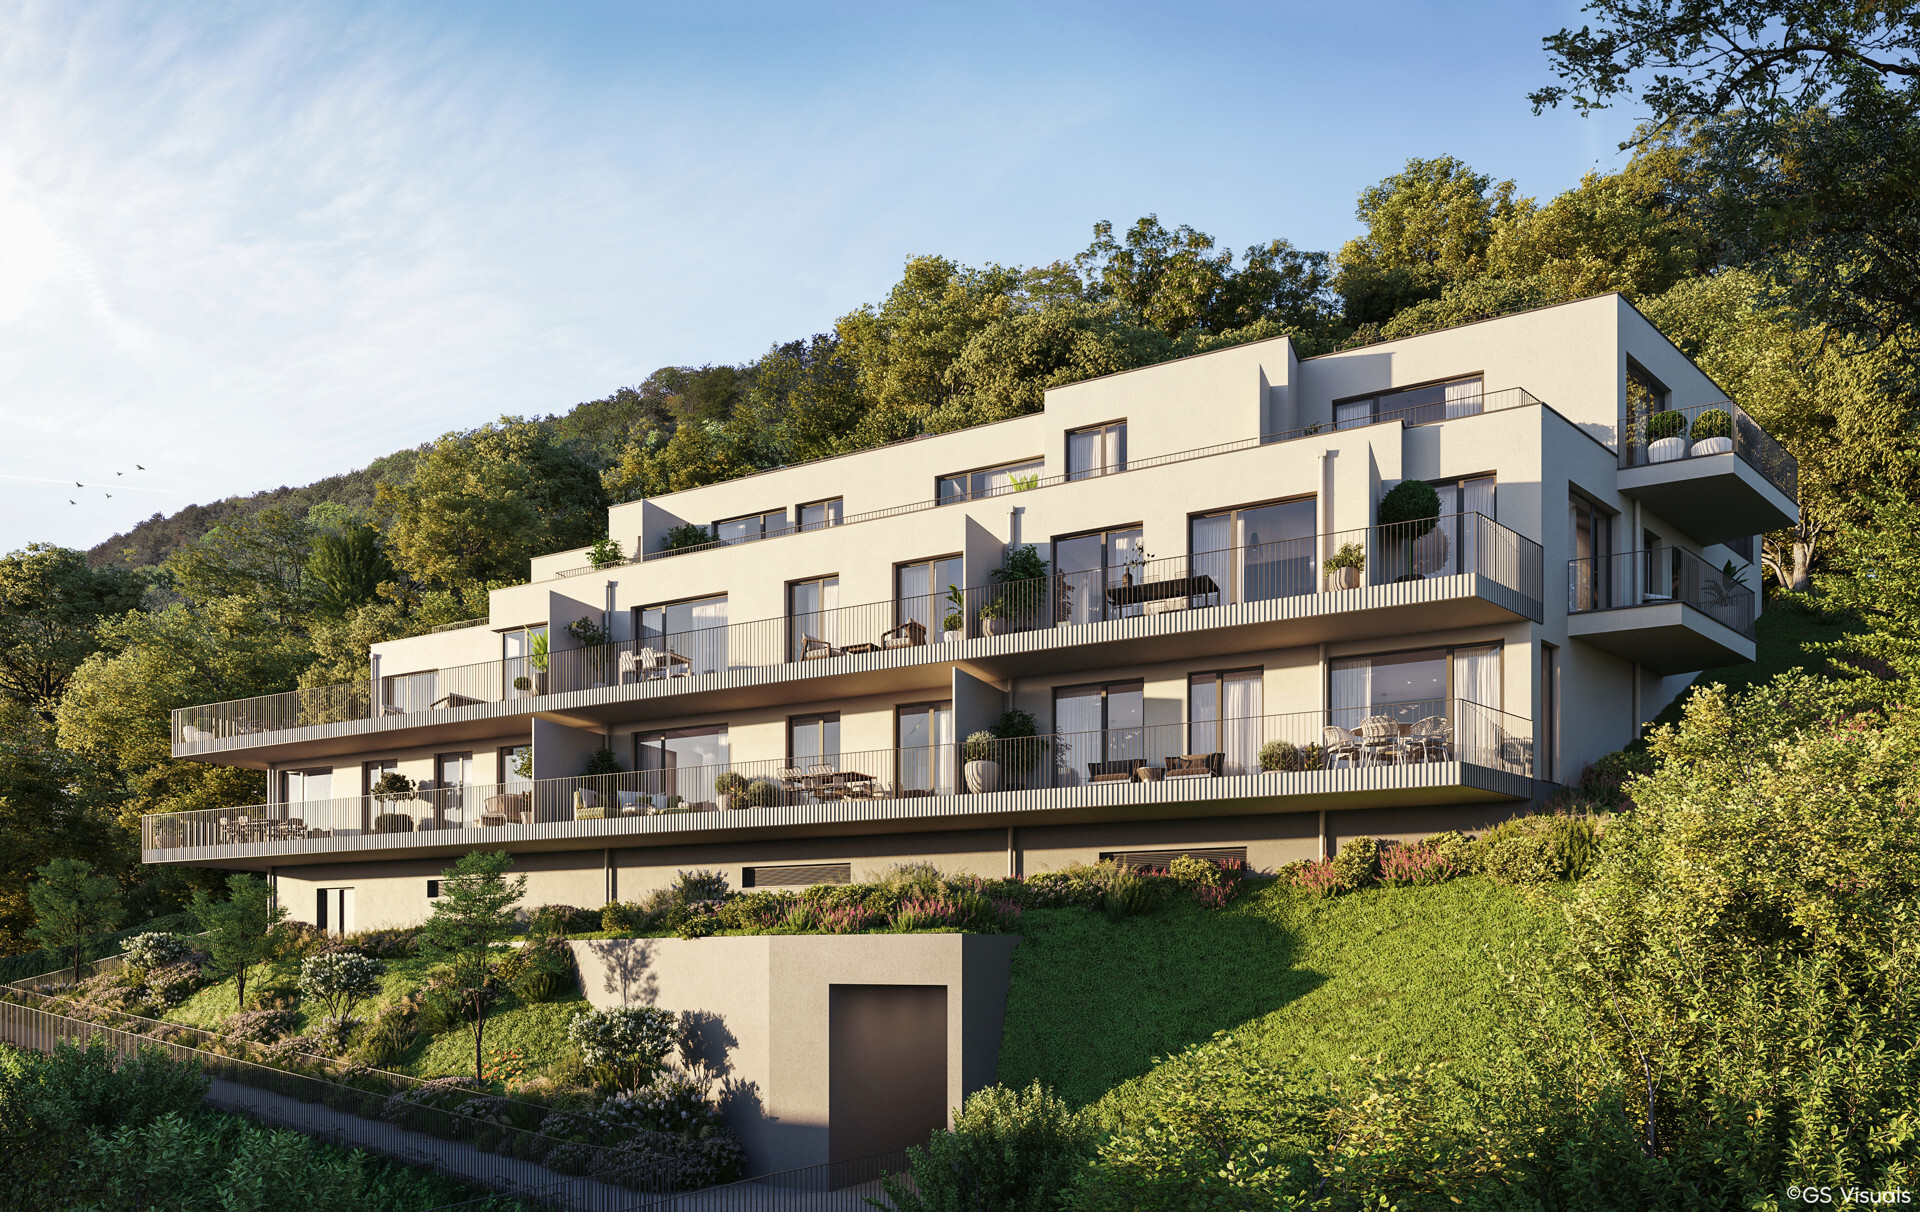 PROVISIONSFREI: Family Living im Grünen - 4 Zimmer-Wohnung mit Loggia und Balkon - zu kaufen in 2391 Kaltenleutgeben